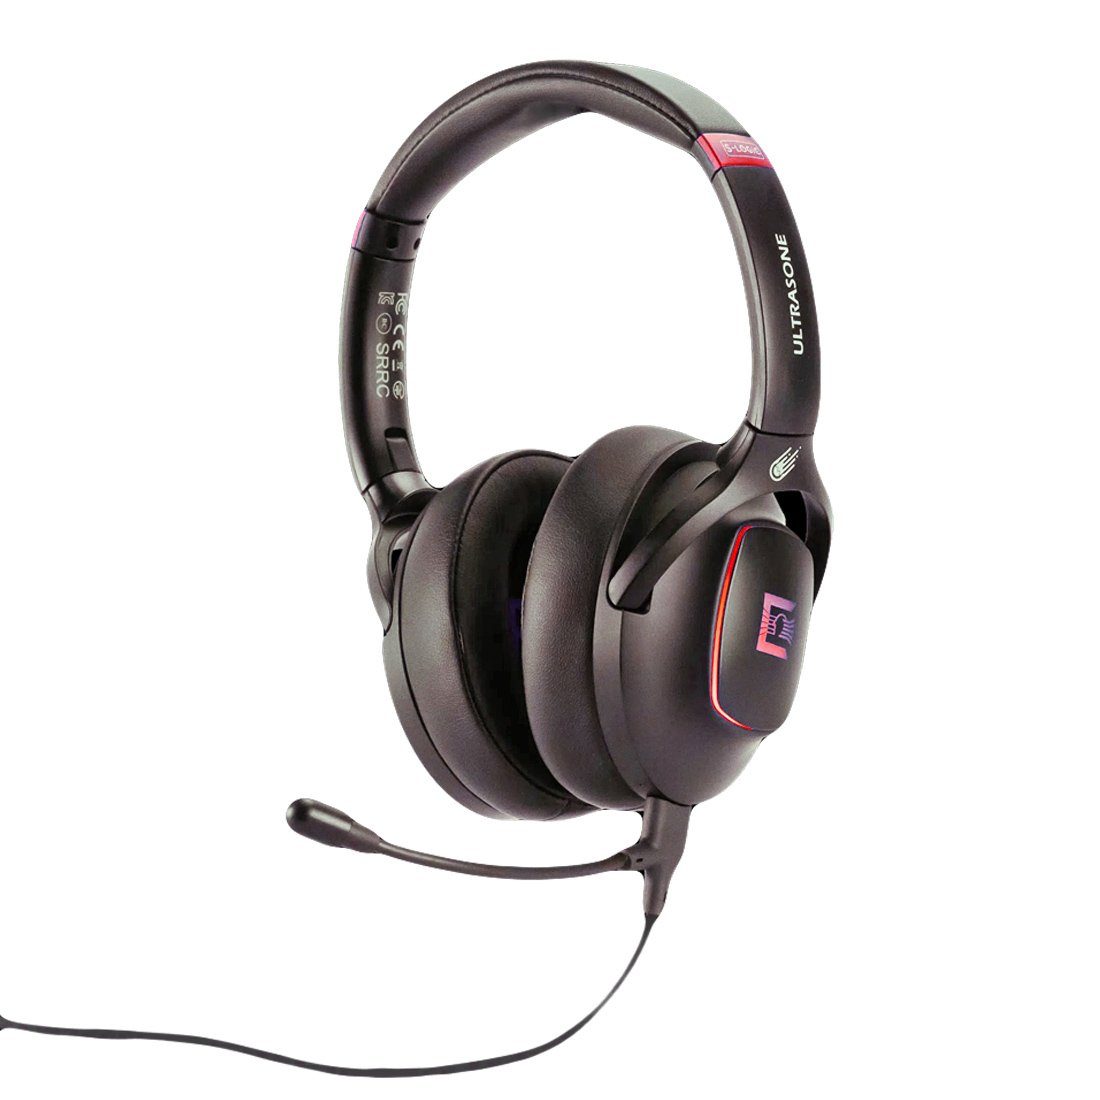 RODE Kopfhörer Bluetooth ONE METEOR Headset Gaming Ultrasone Microphones Ultrasone